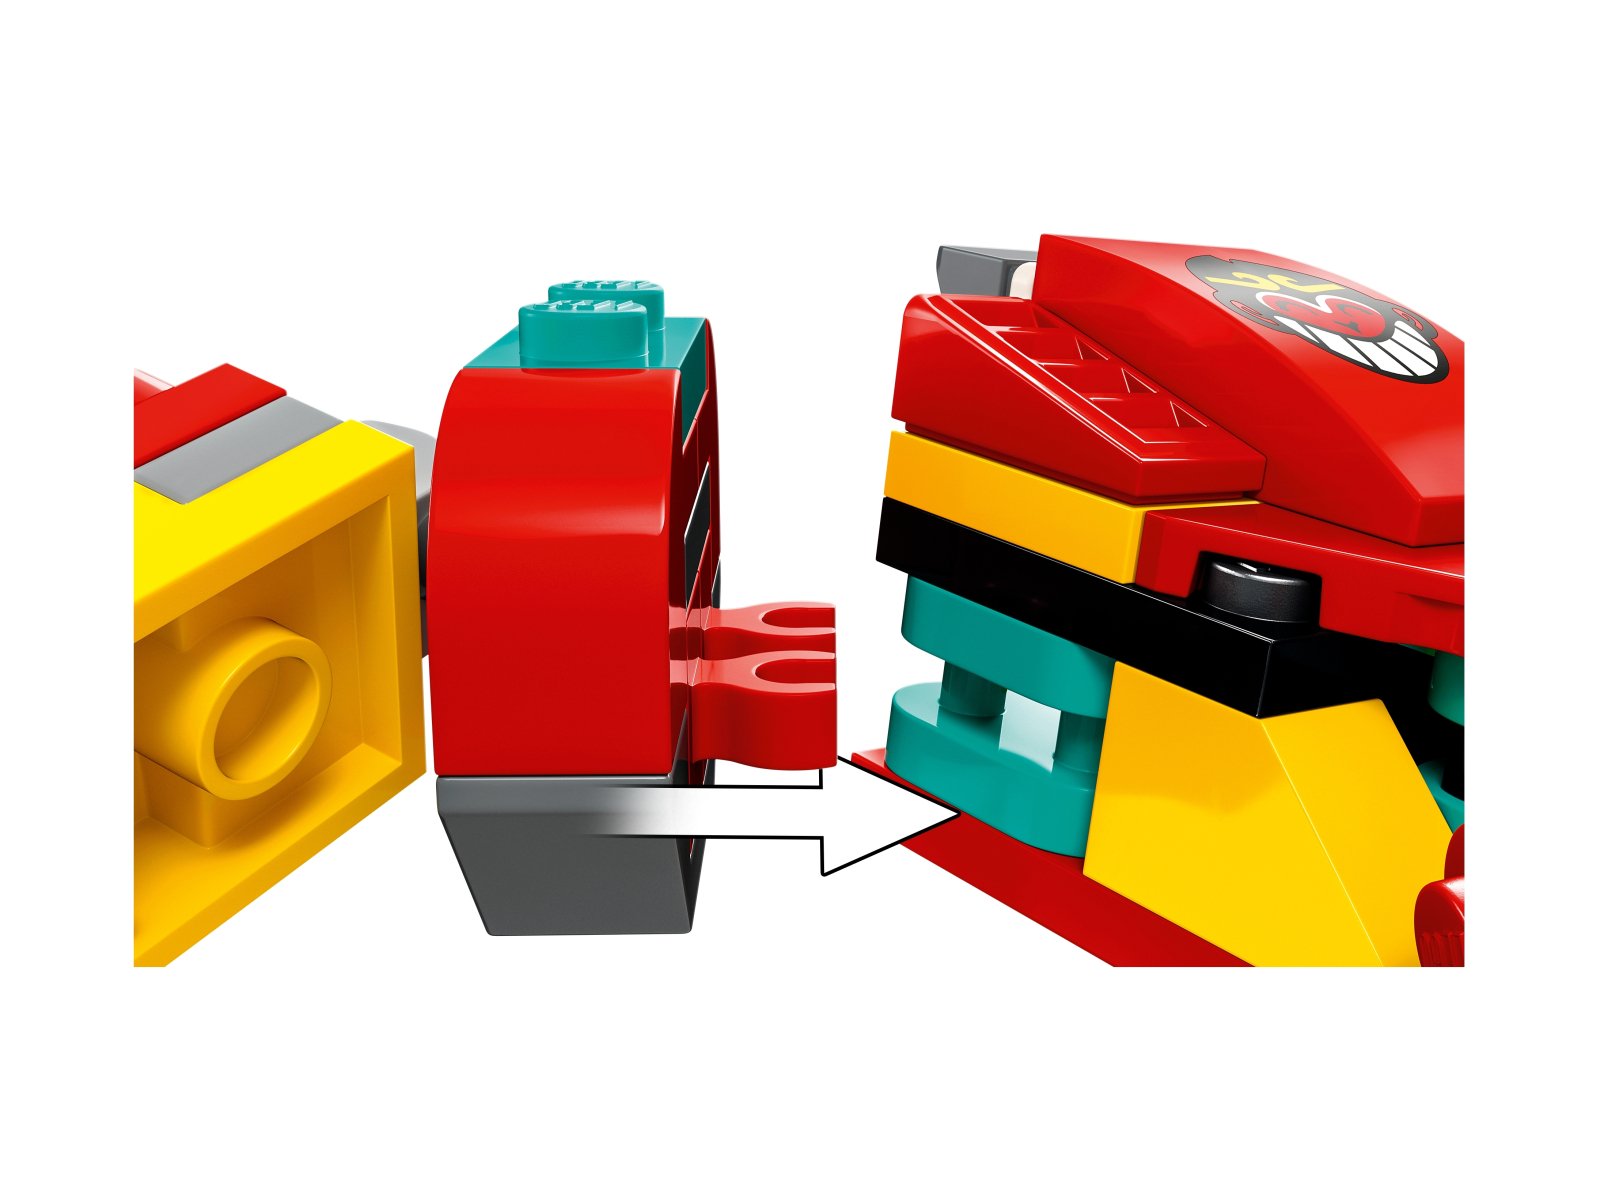 LEGO Monkie Kid Modele z kosturem Monkie Kida 80030